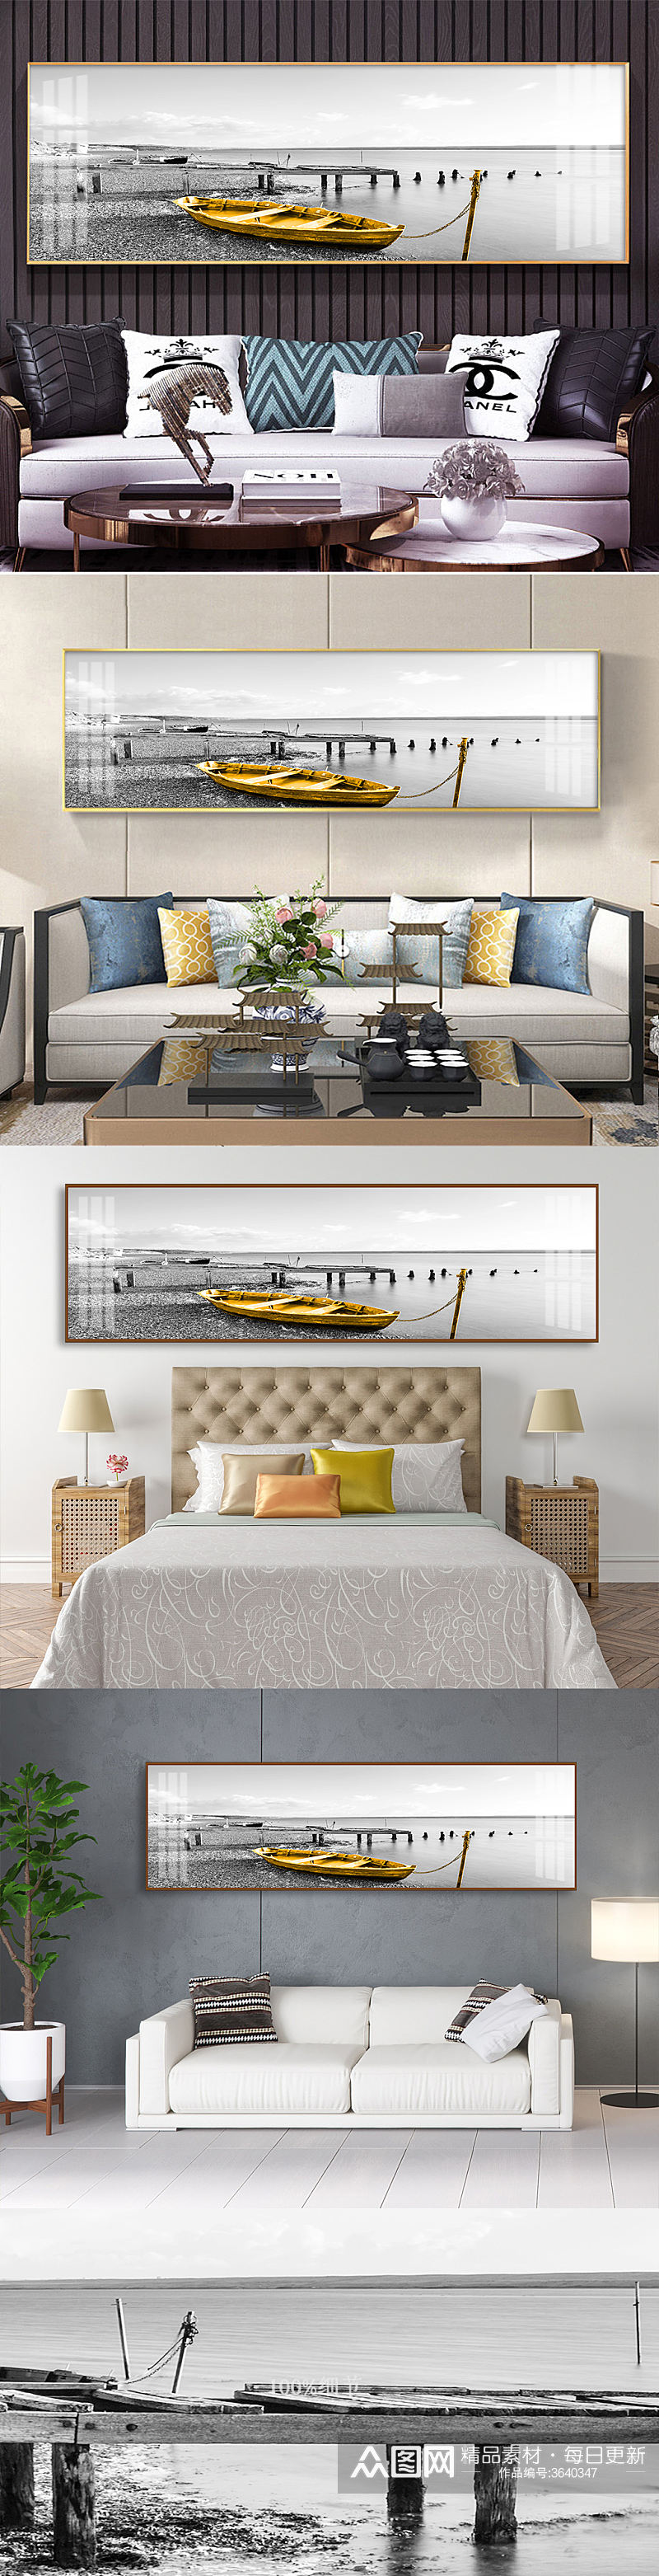 欧式风格黑白风景金色小船客厅装饰画素材